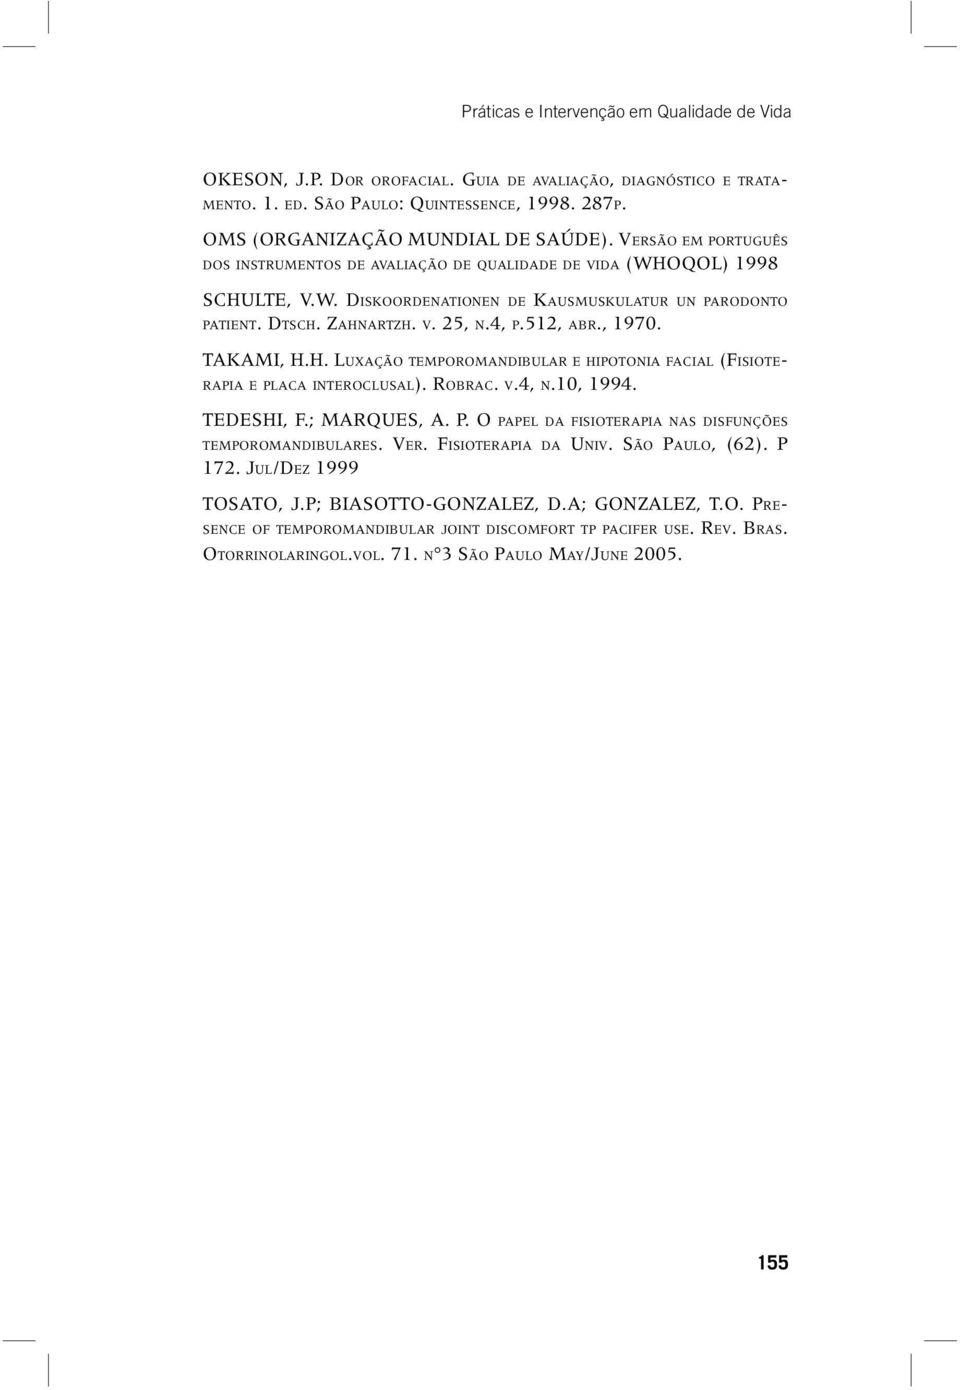 , 1970. TAKAMI, H.H. LUXAÇÃO TEMPOROMANDIBULAR E HIPOTONIA FACIAL (FISIOTE- RAPIA E PLACA INTEROCLUSAL). ROBRAC. V.4, N.10, 1994. TEDESHI, F.; MARQUES, A. P. O PAPEL DA FISIOTERAPIA NAS DISFUNÇÕES TEMPOROMANDIBULARES.